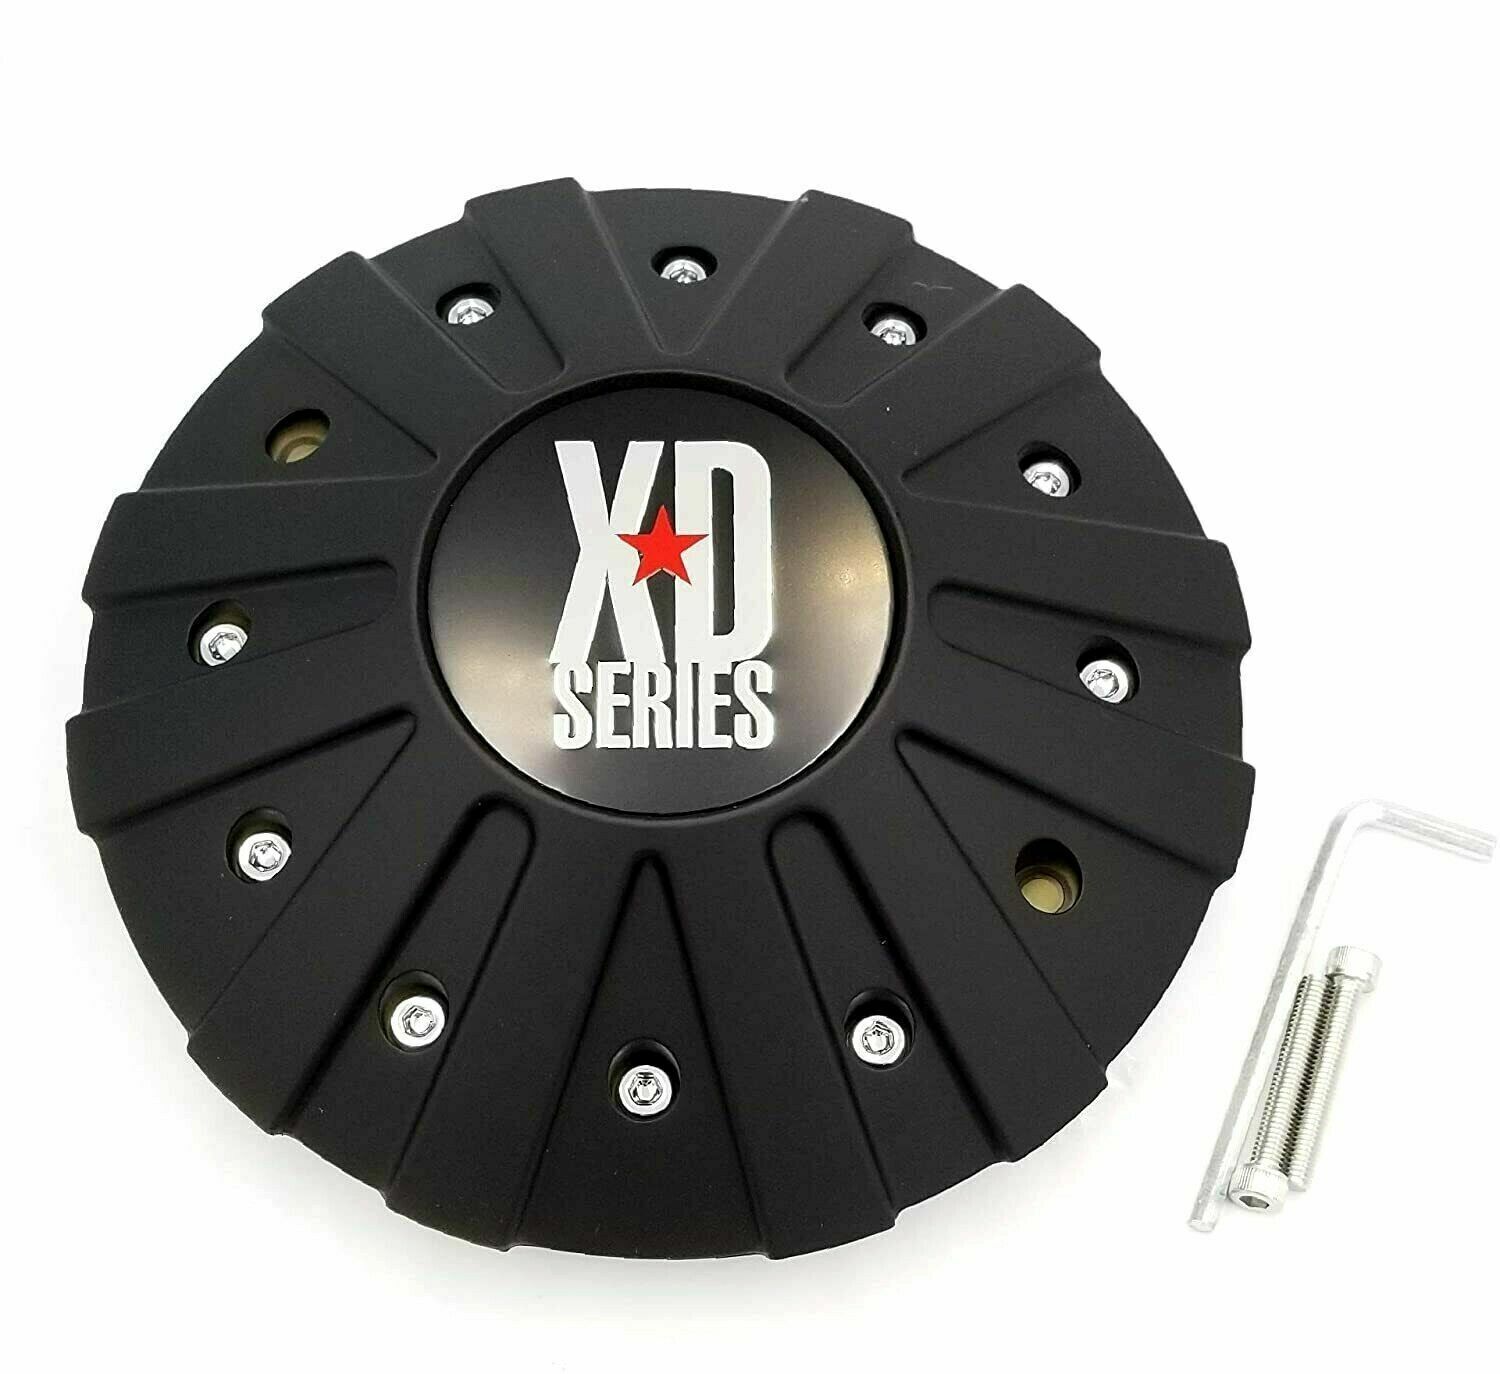 KMC XD Series Wheel Center Cap Matte Black FITS ALL XD778 Monster